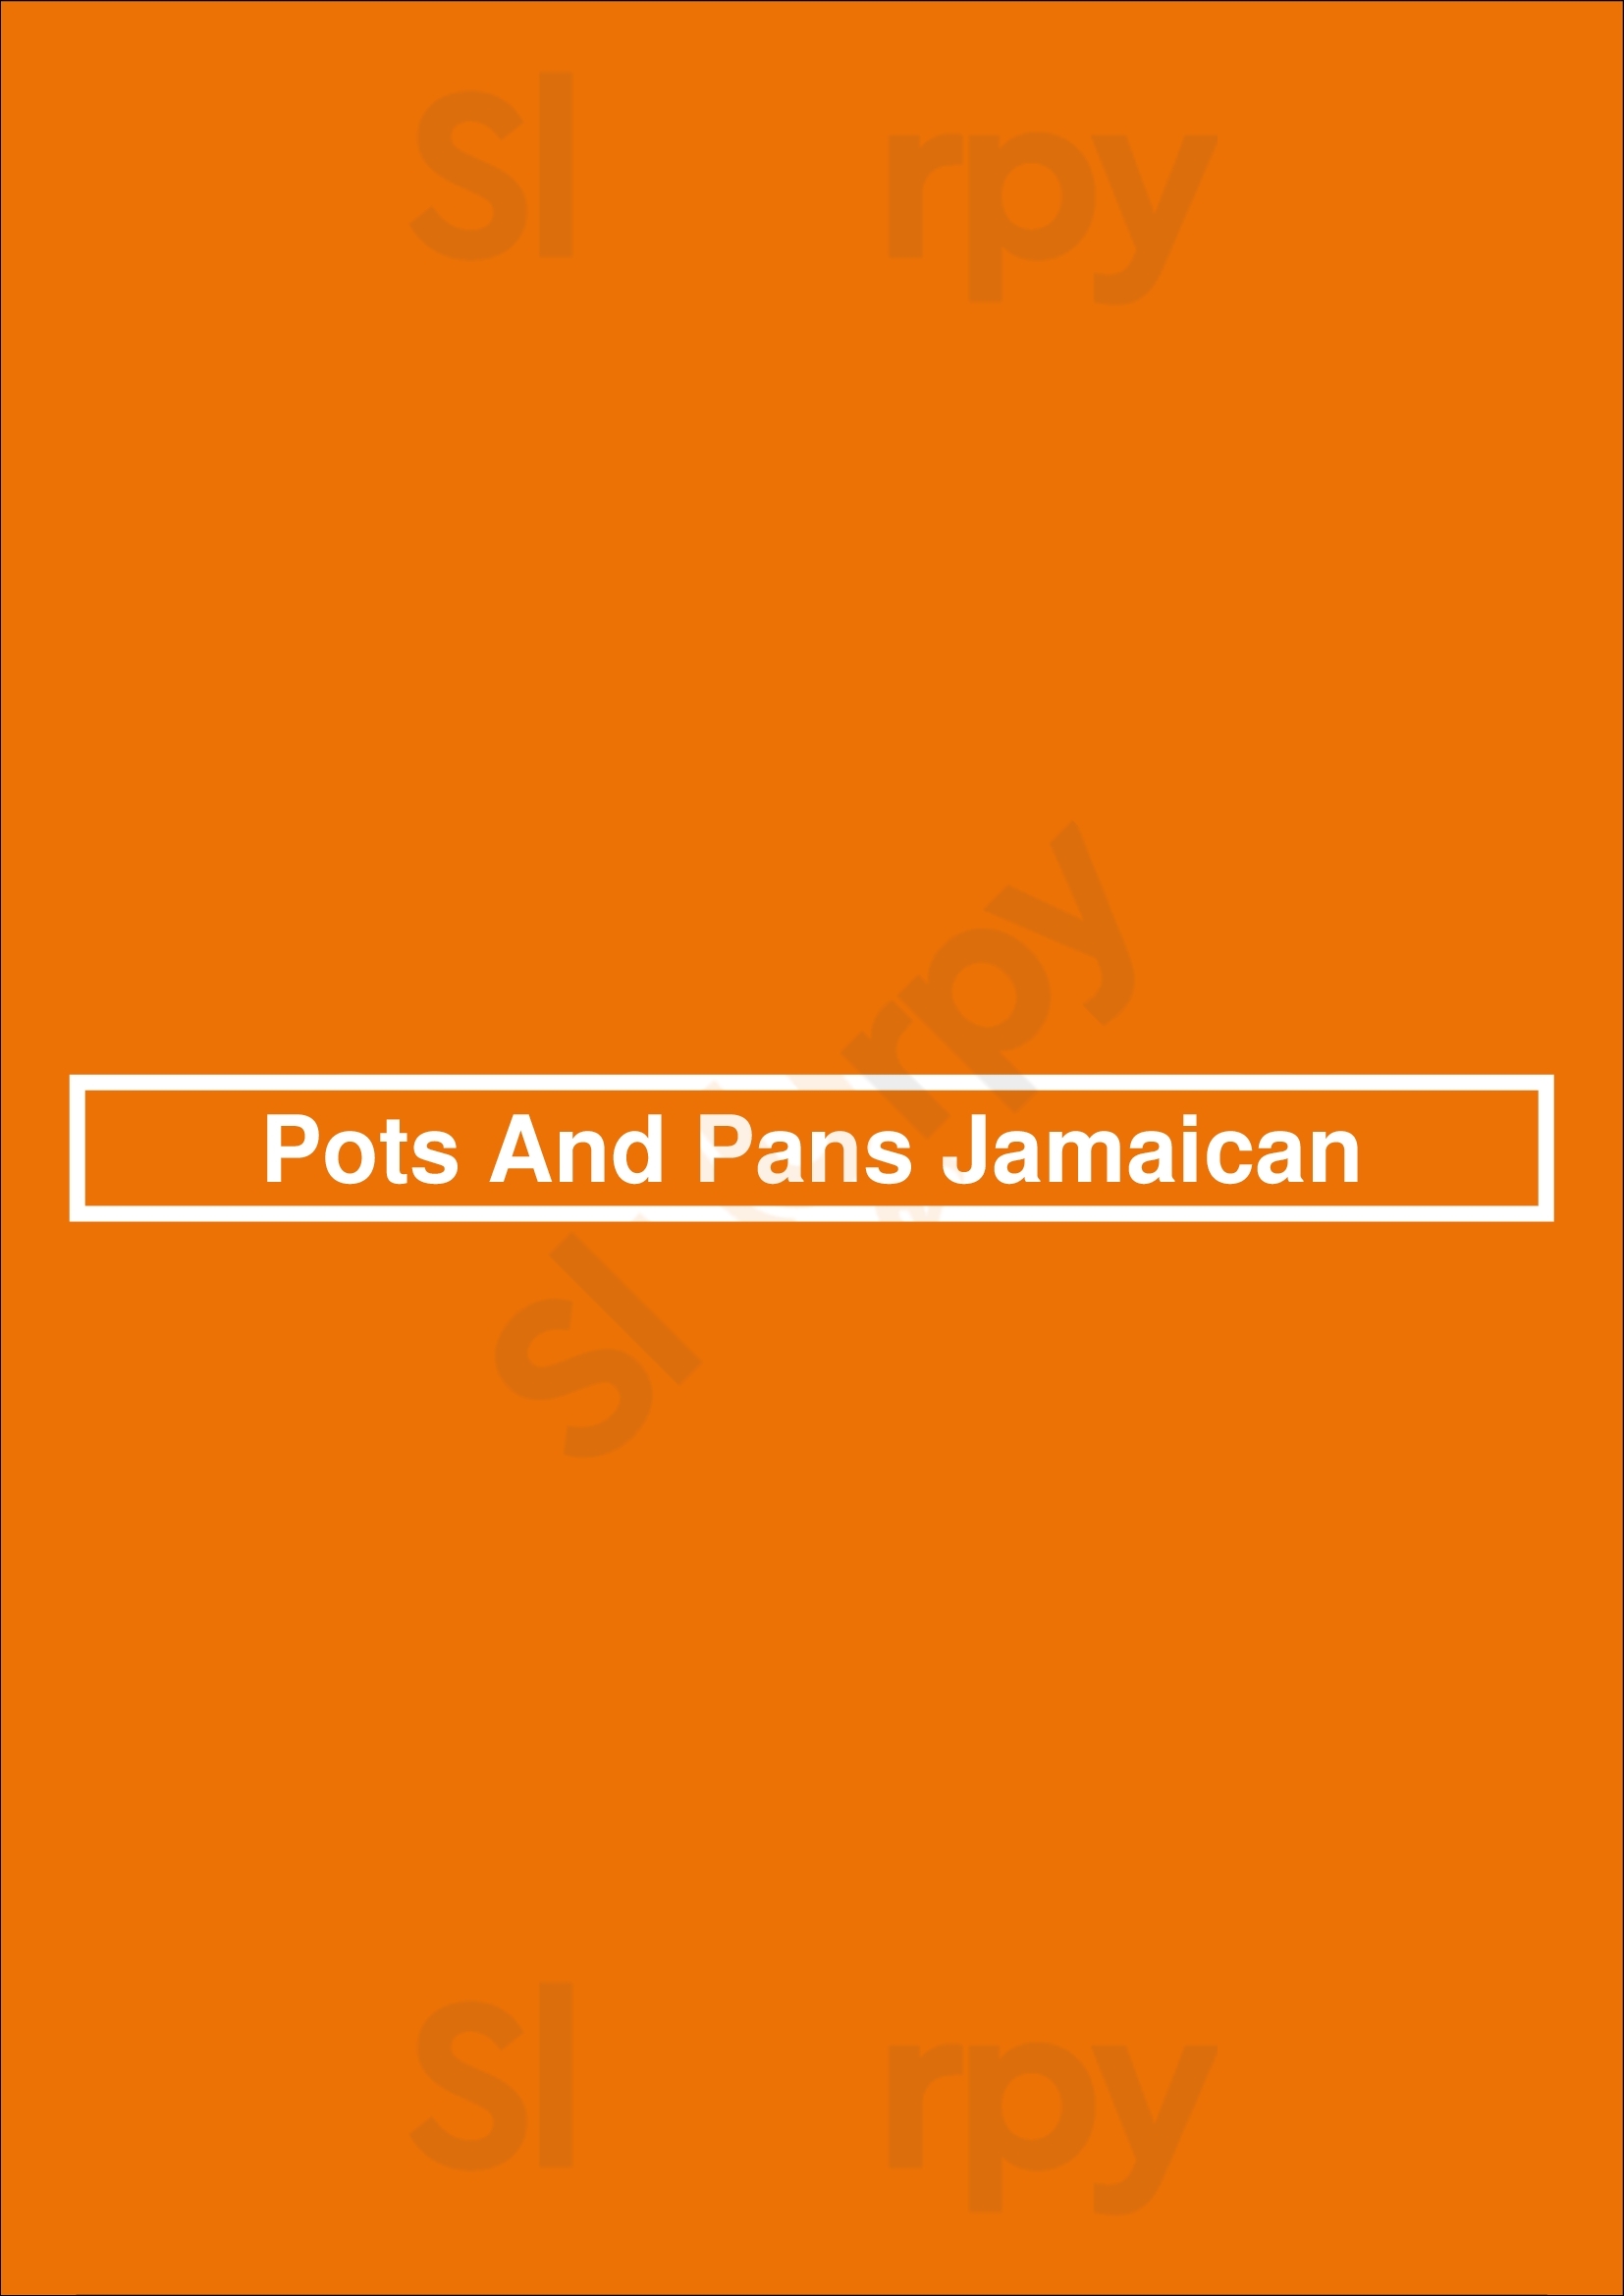 Pots & Pans Jamaican Cuisine Akron Menu - 1